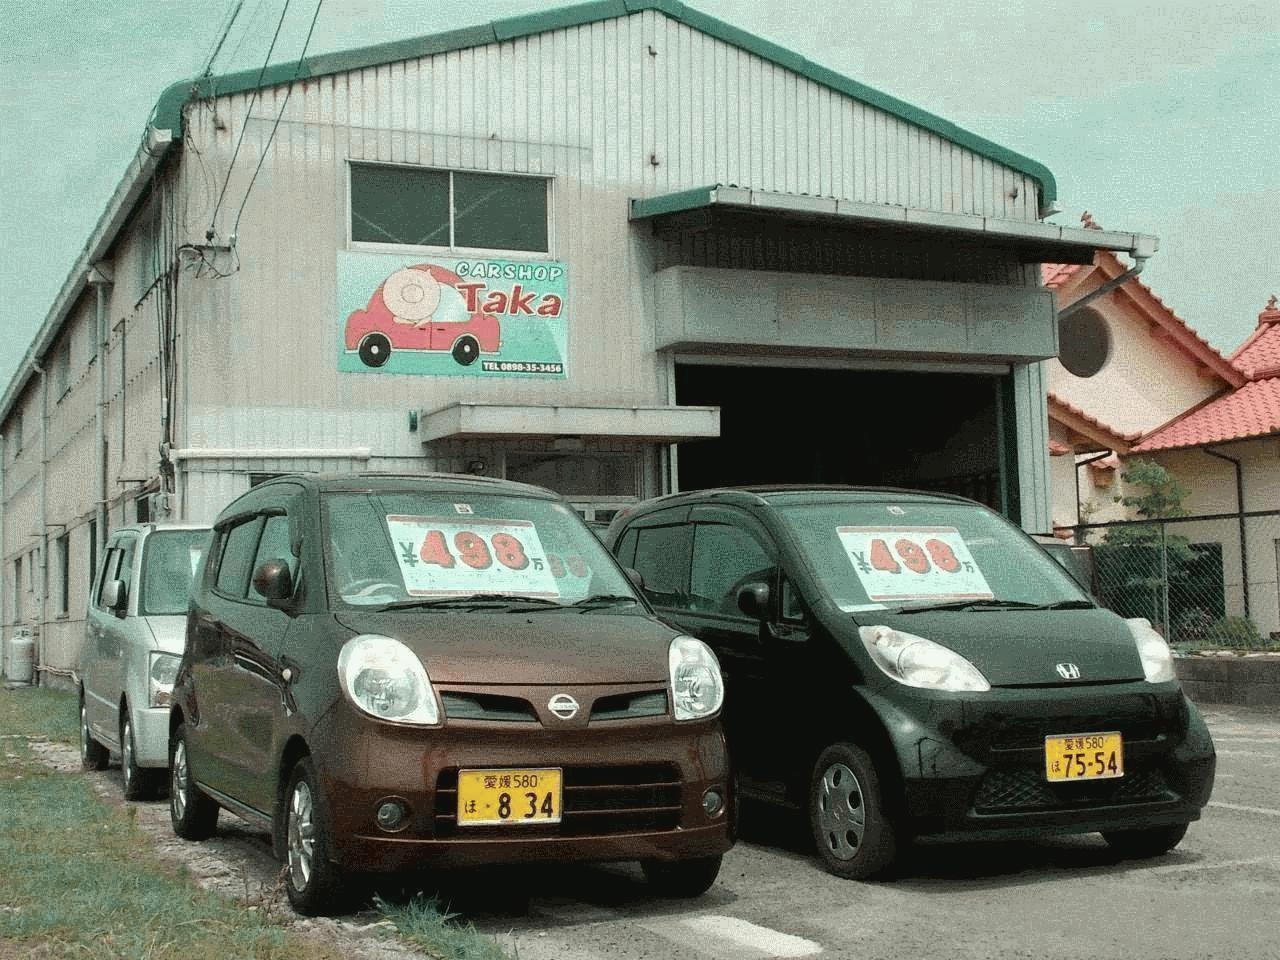 Car Shop Taka 愛媛県今治市 Mjnetディーラー お店の情報